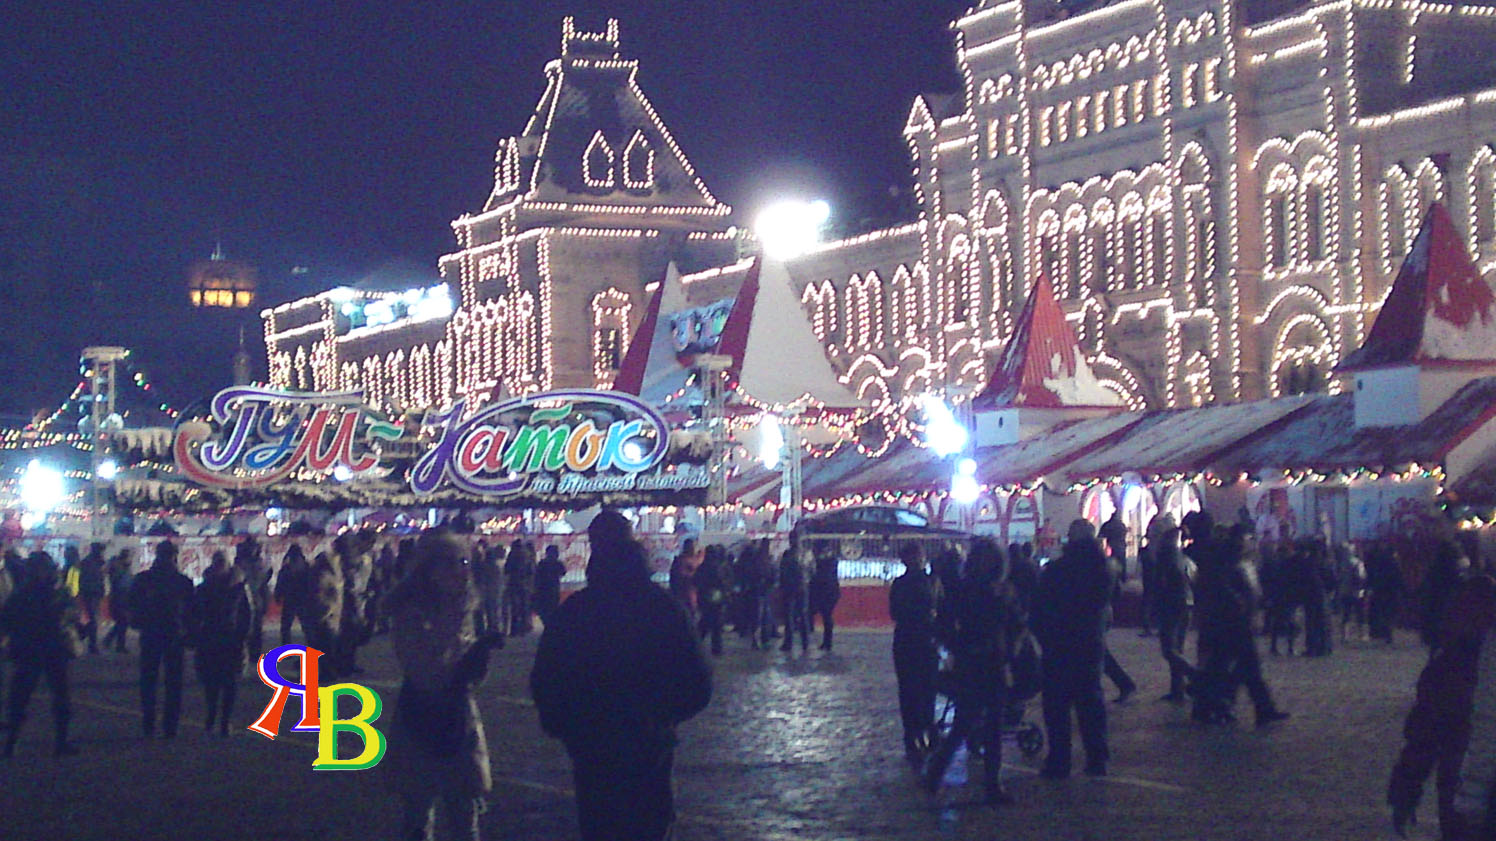 Moscou - ringue de gelo na Praça Vermelha